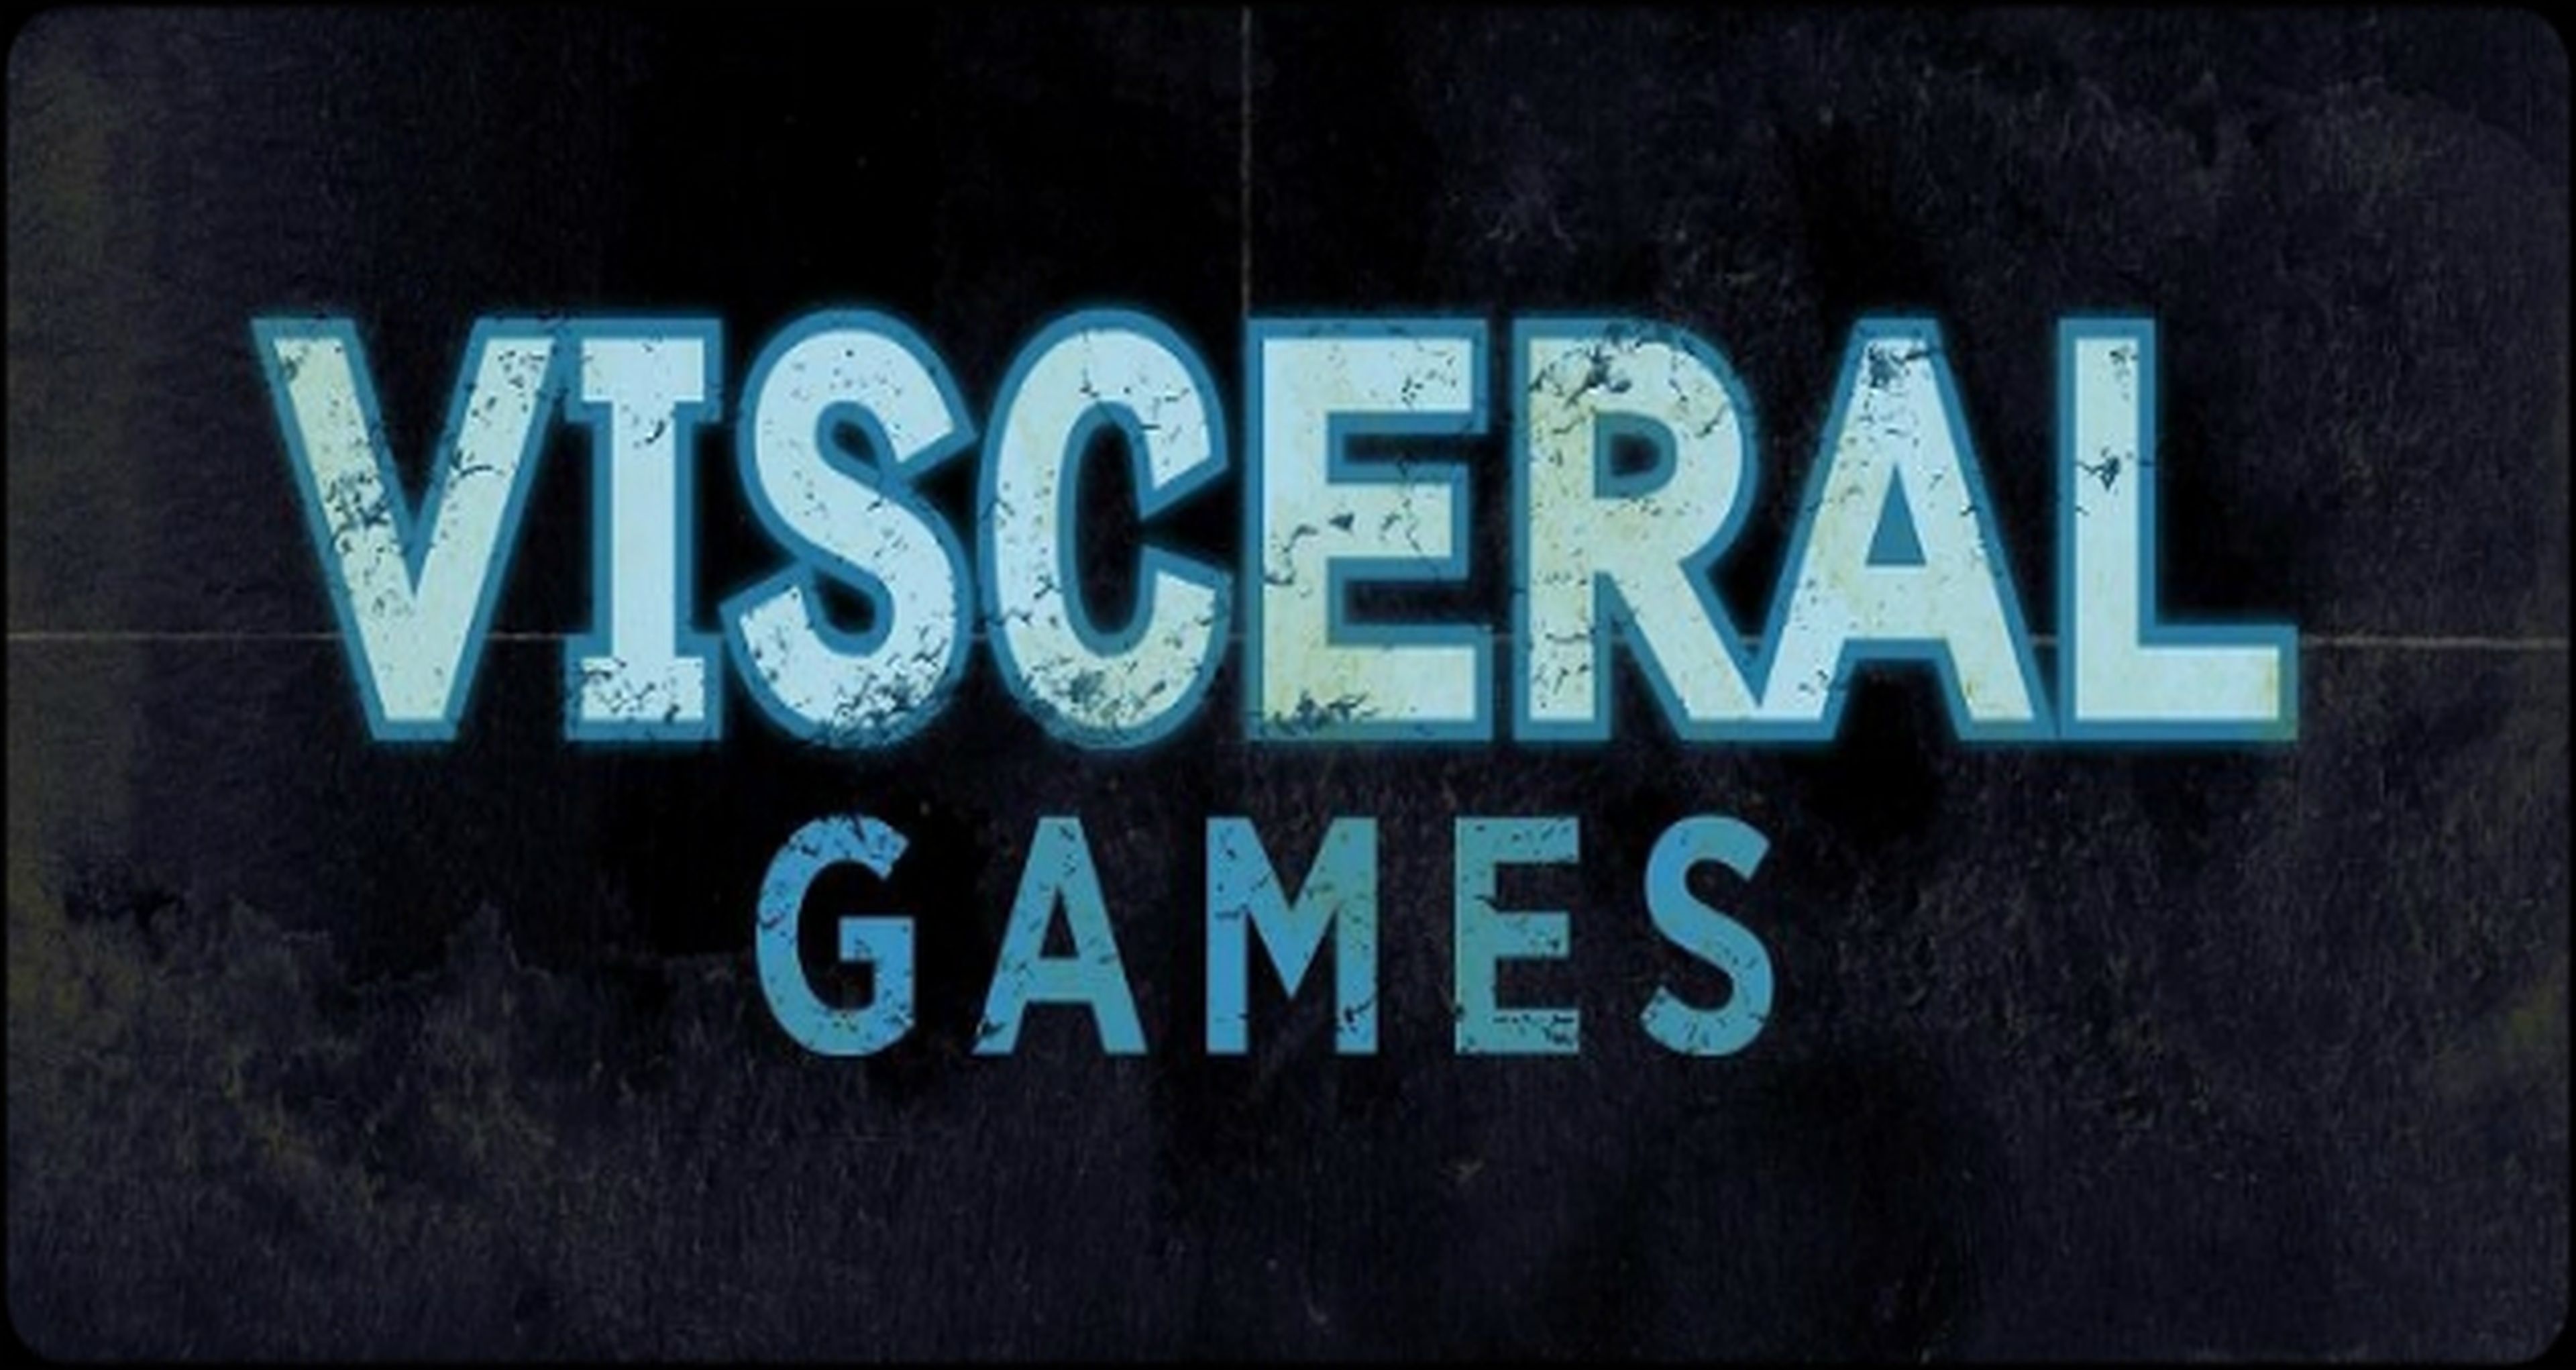 Visceral Games trabaja en un nuevo proyecto